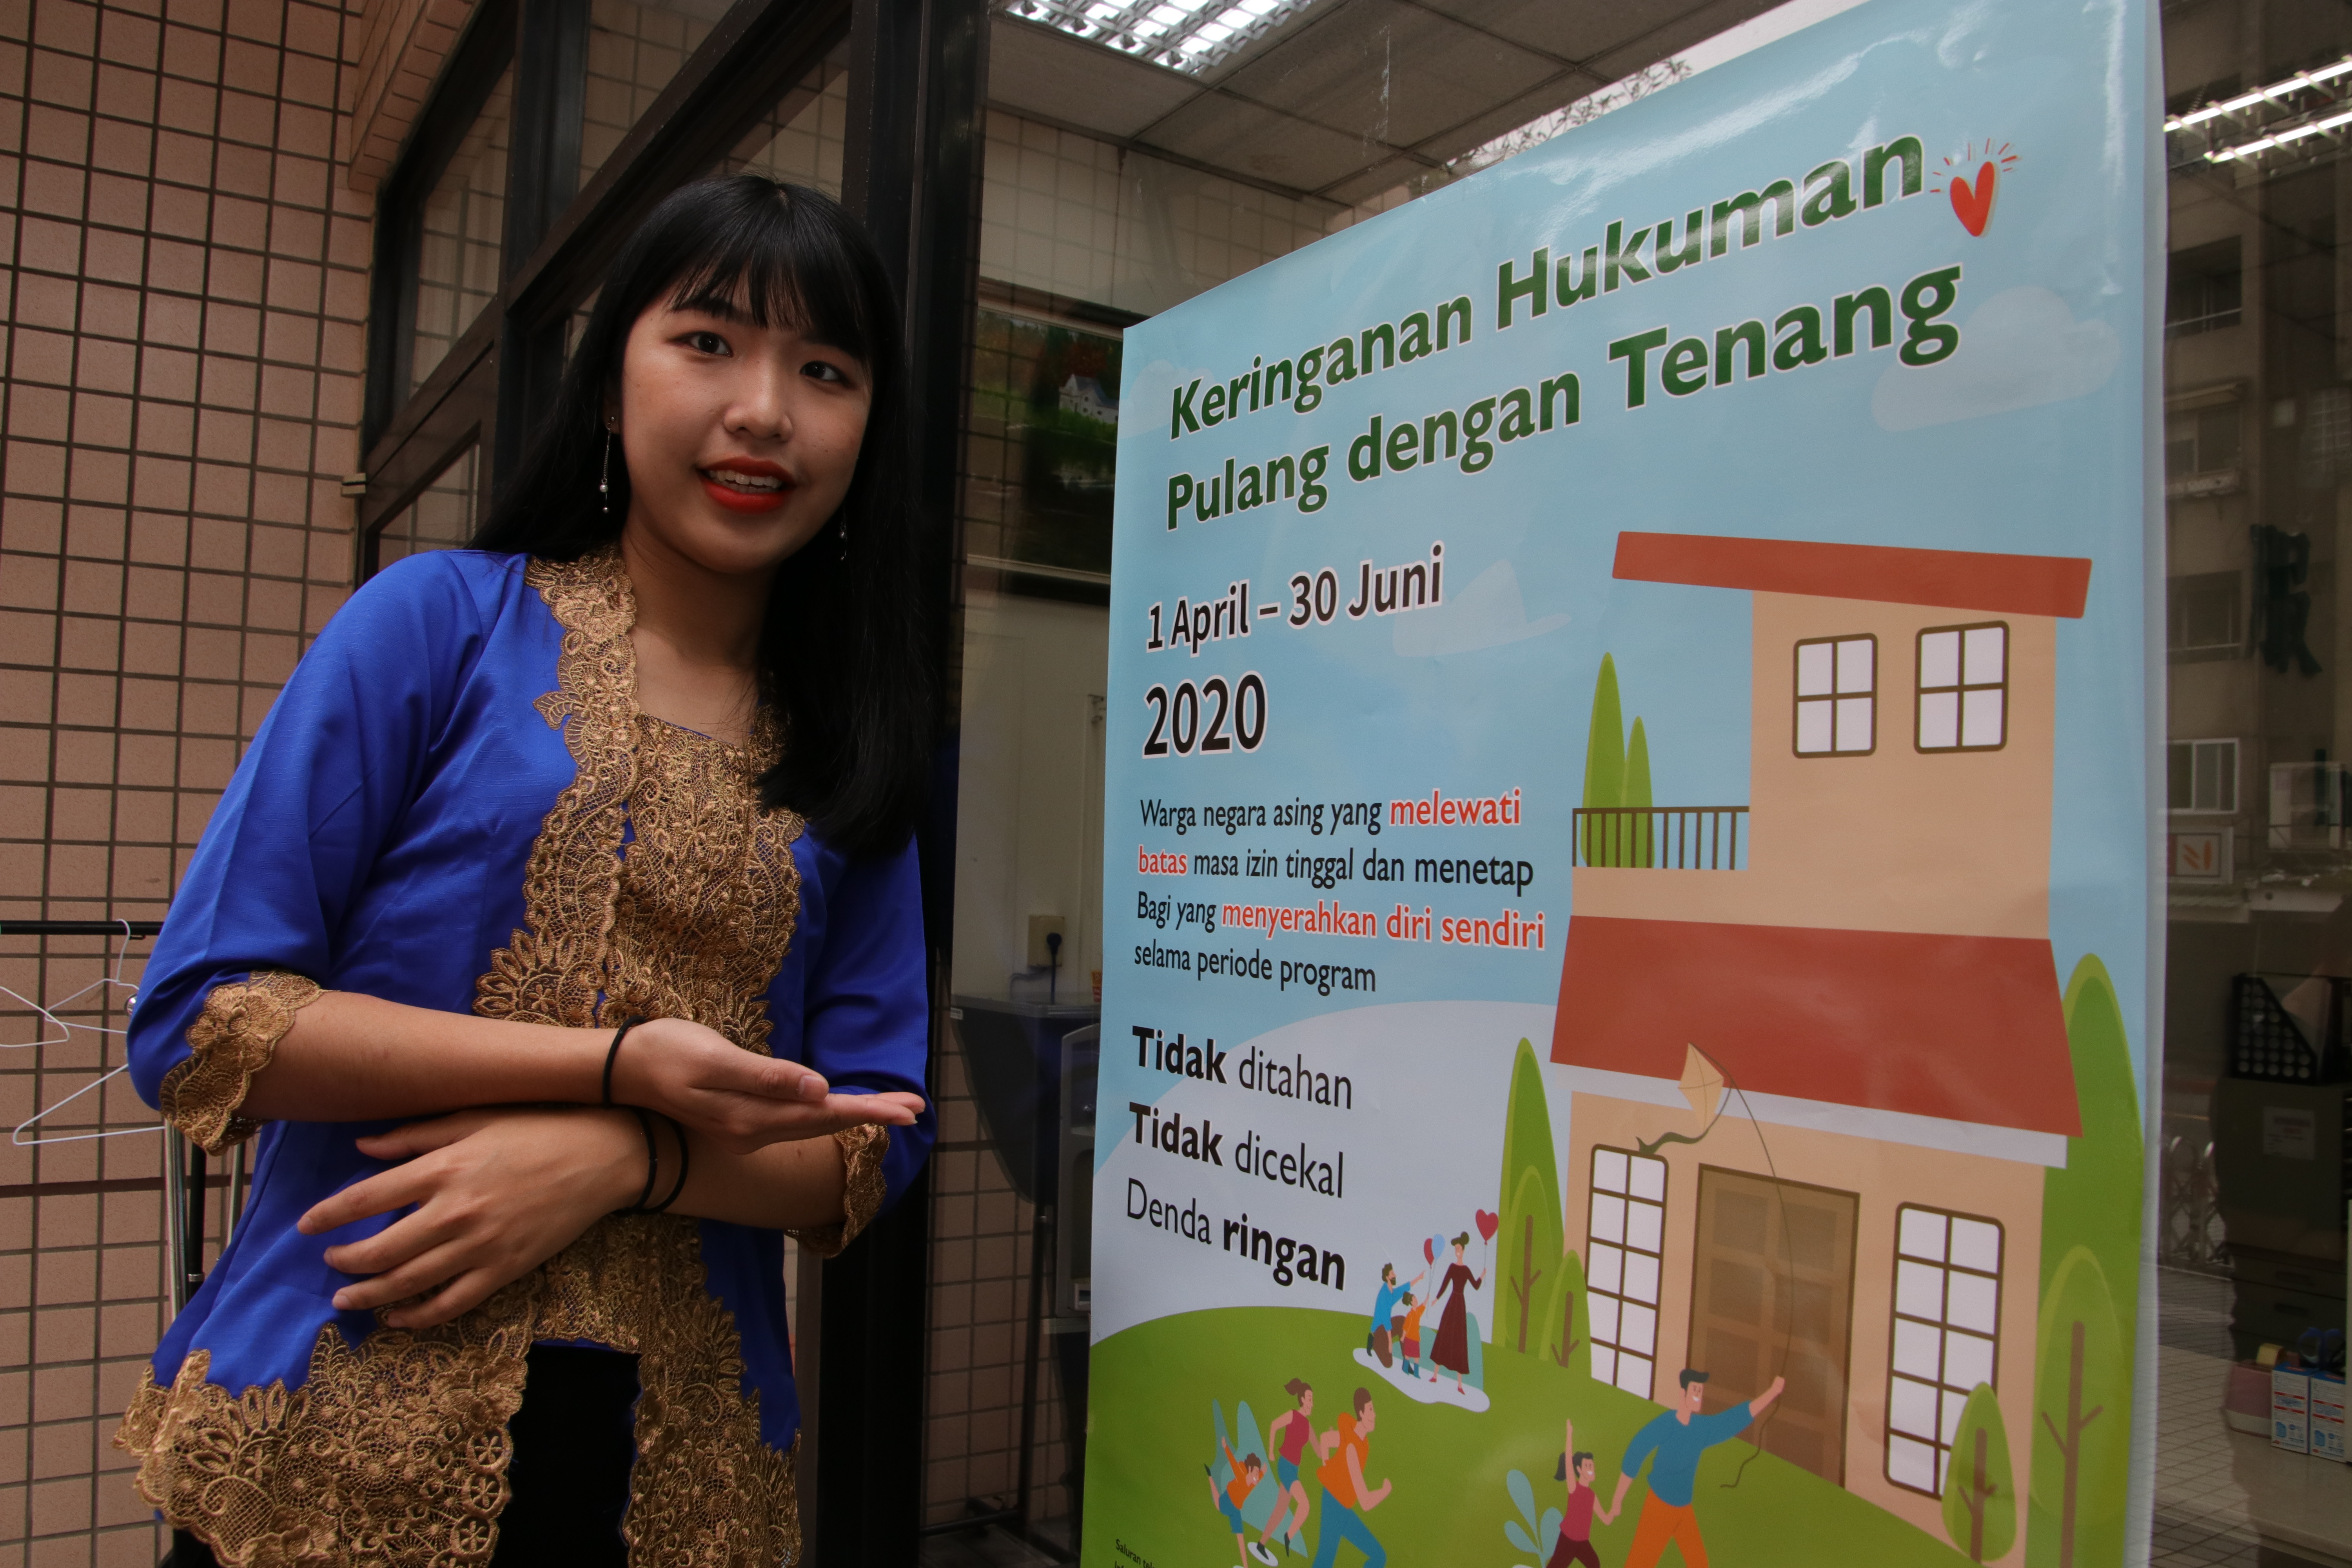 ลี่ เจียหลิ๋ง (利佳玲) บุตรผู้ตั้งถิ่นฐานใหม่ชาวชาวอินโดนิเซีย ประชาสัมพันธ์โครงการมอบตัวด้วยตนเองของสำนักงานตรวจคนเข้าเมือง